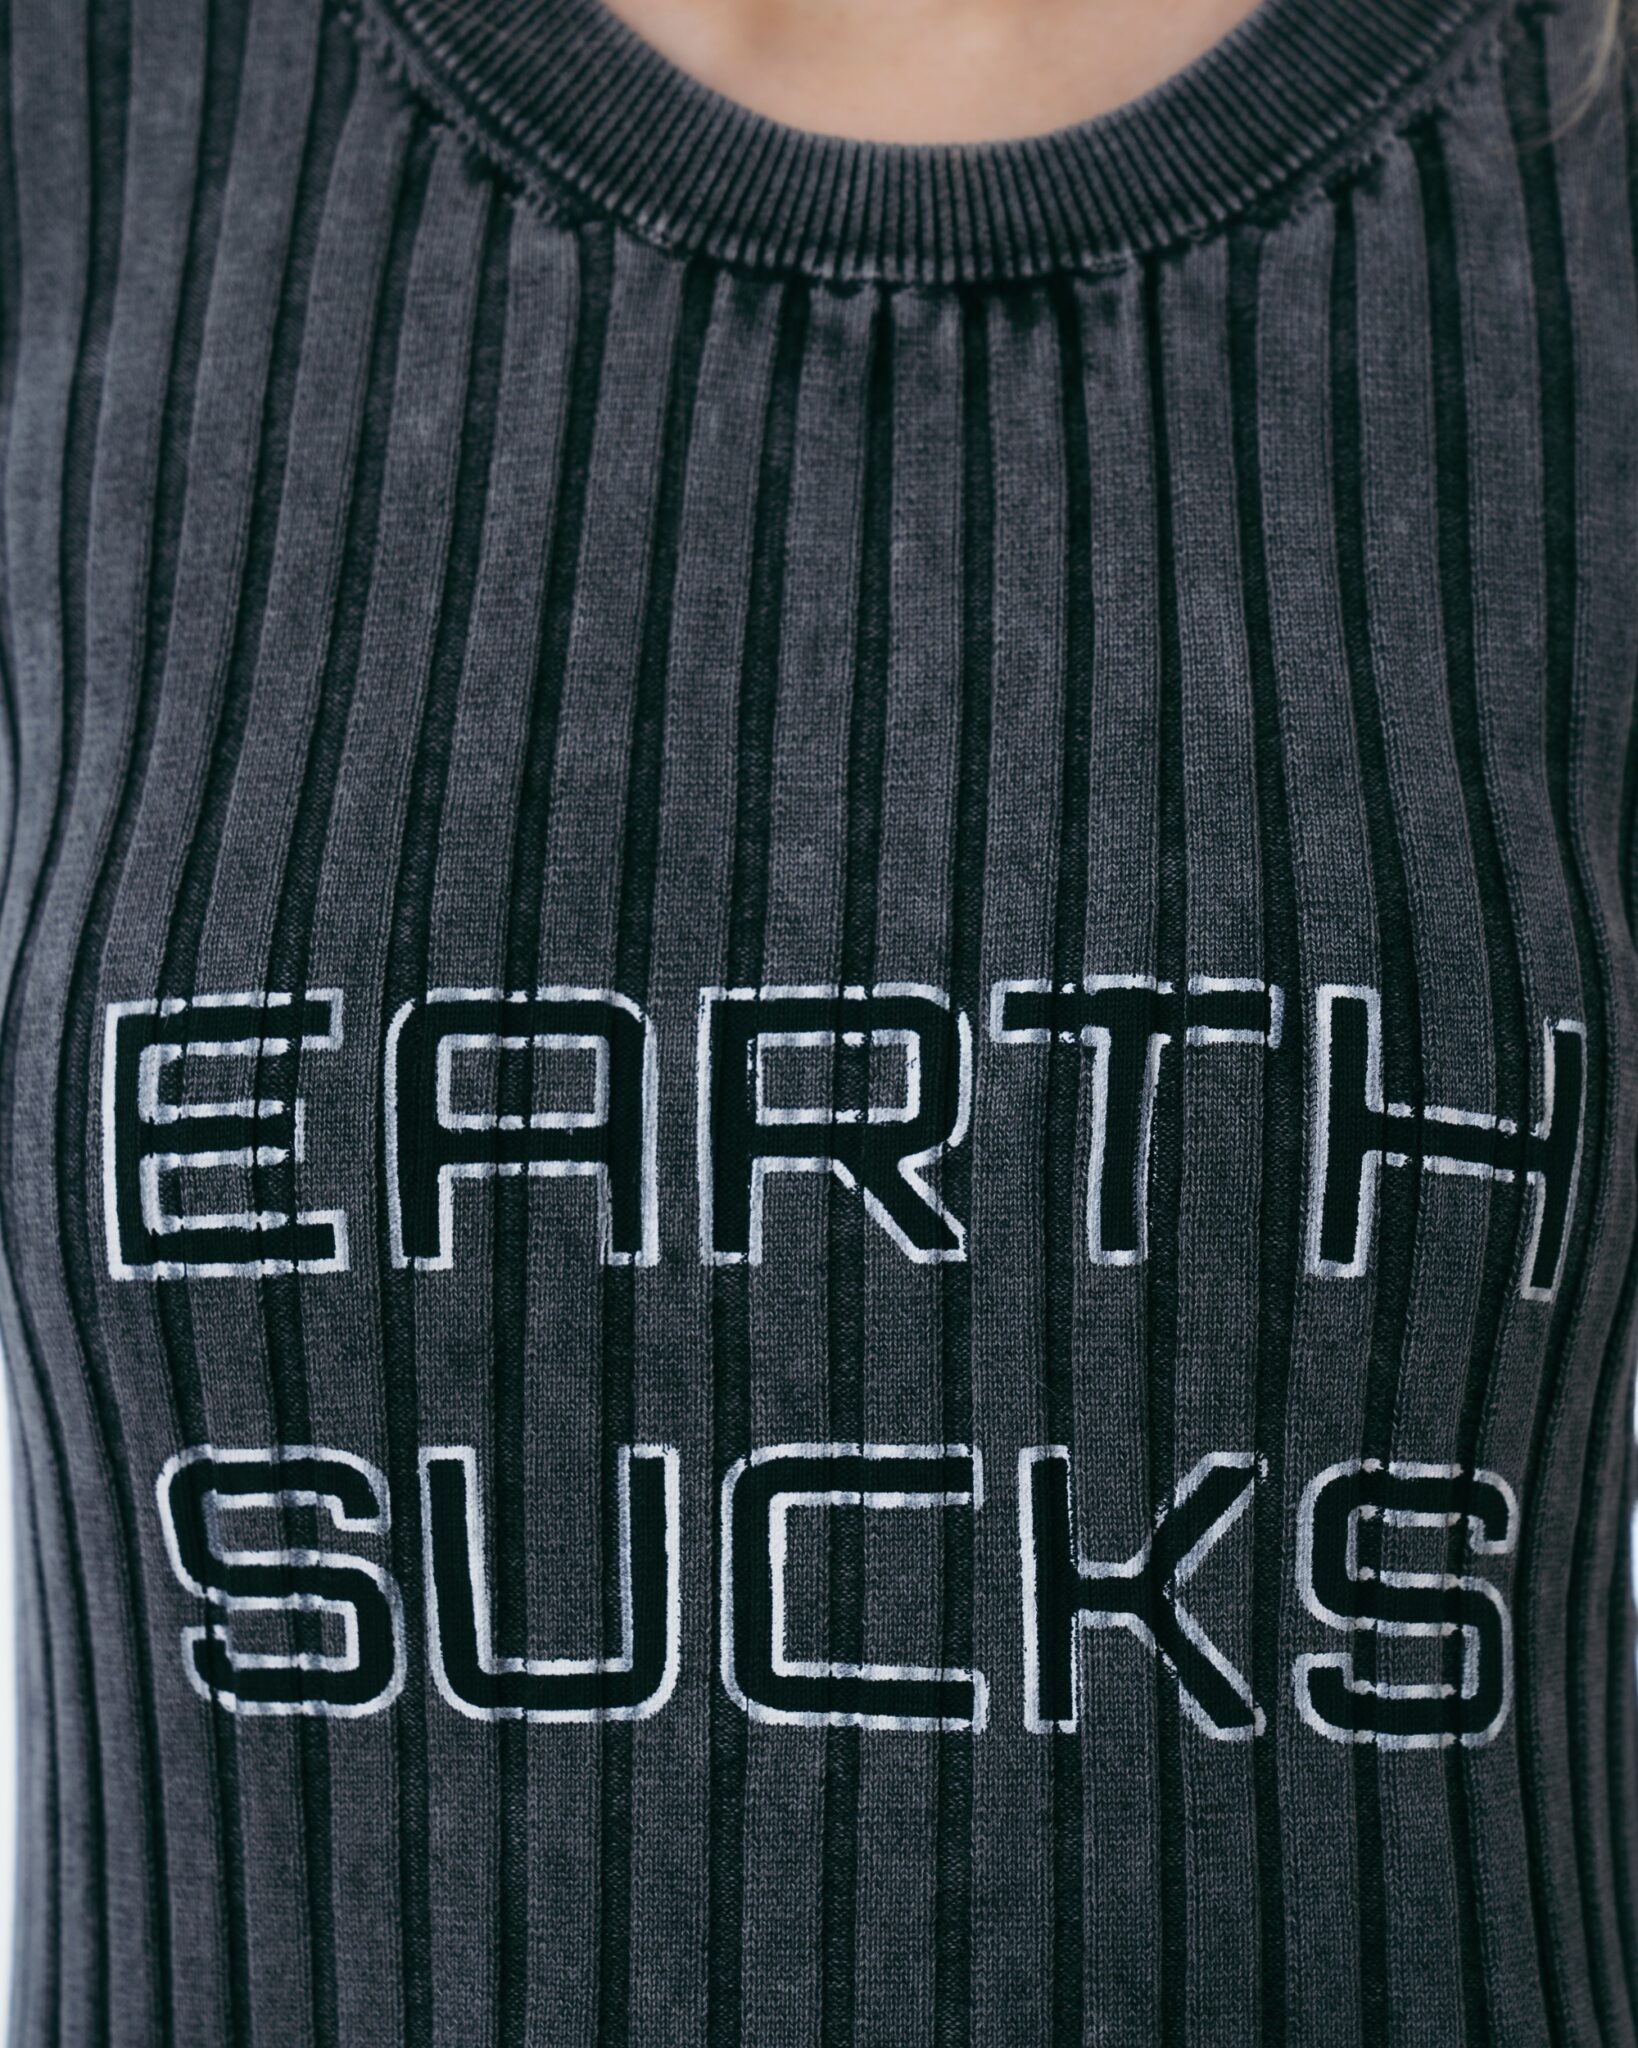 Earth Sucks Top